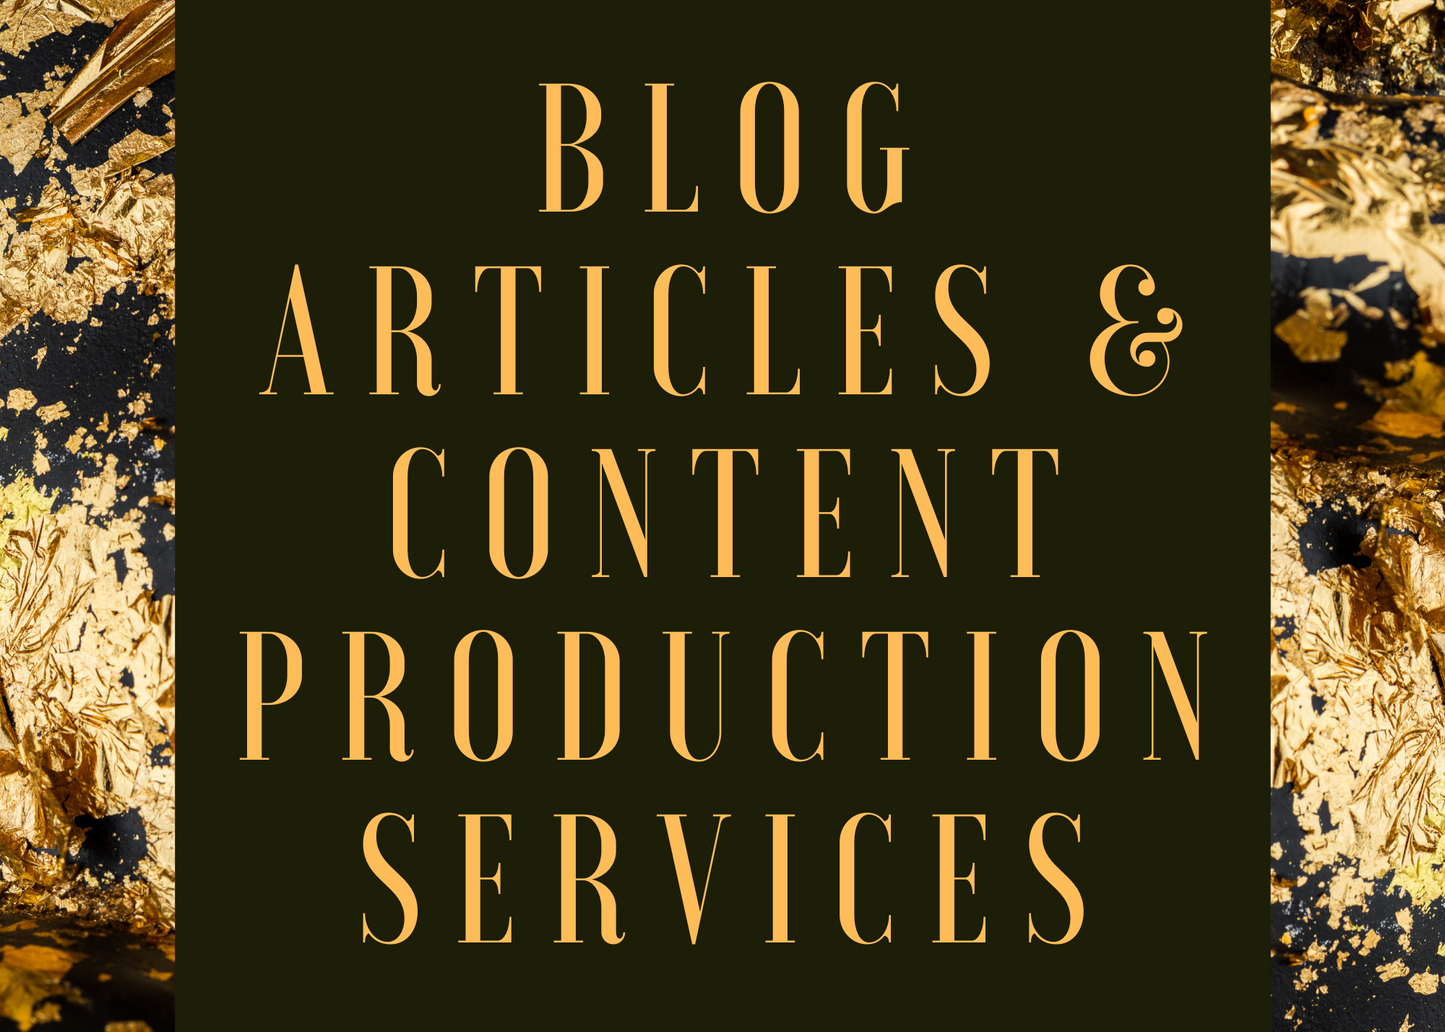 Blog Articles & Content Production Services